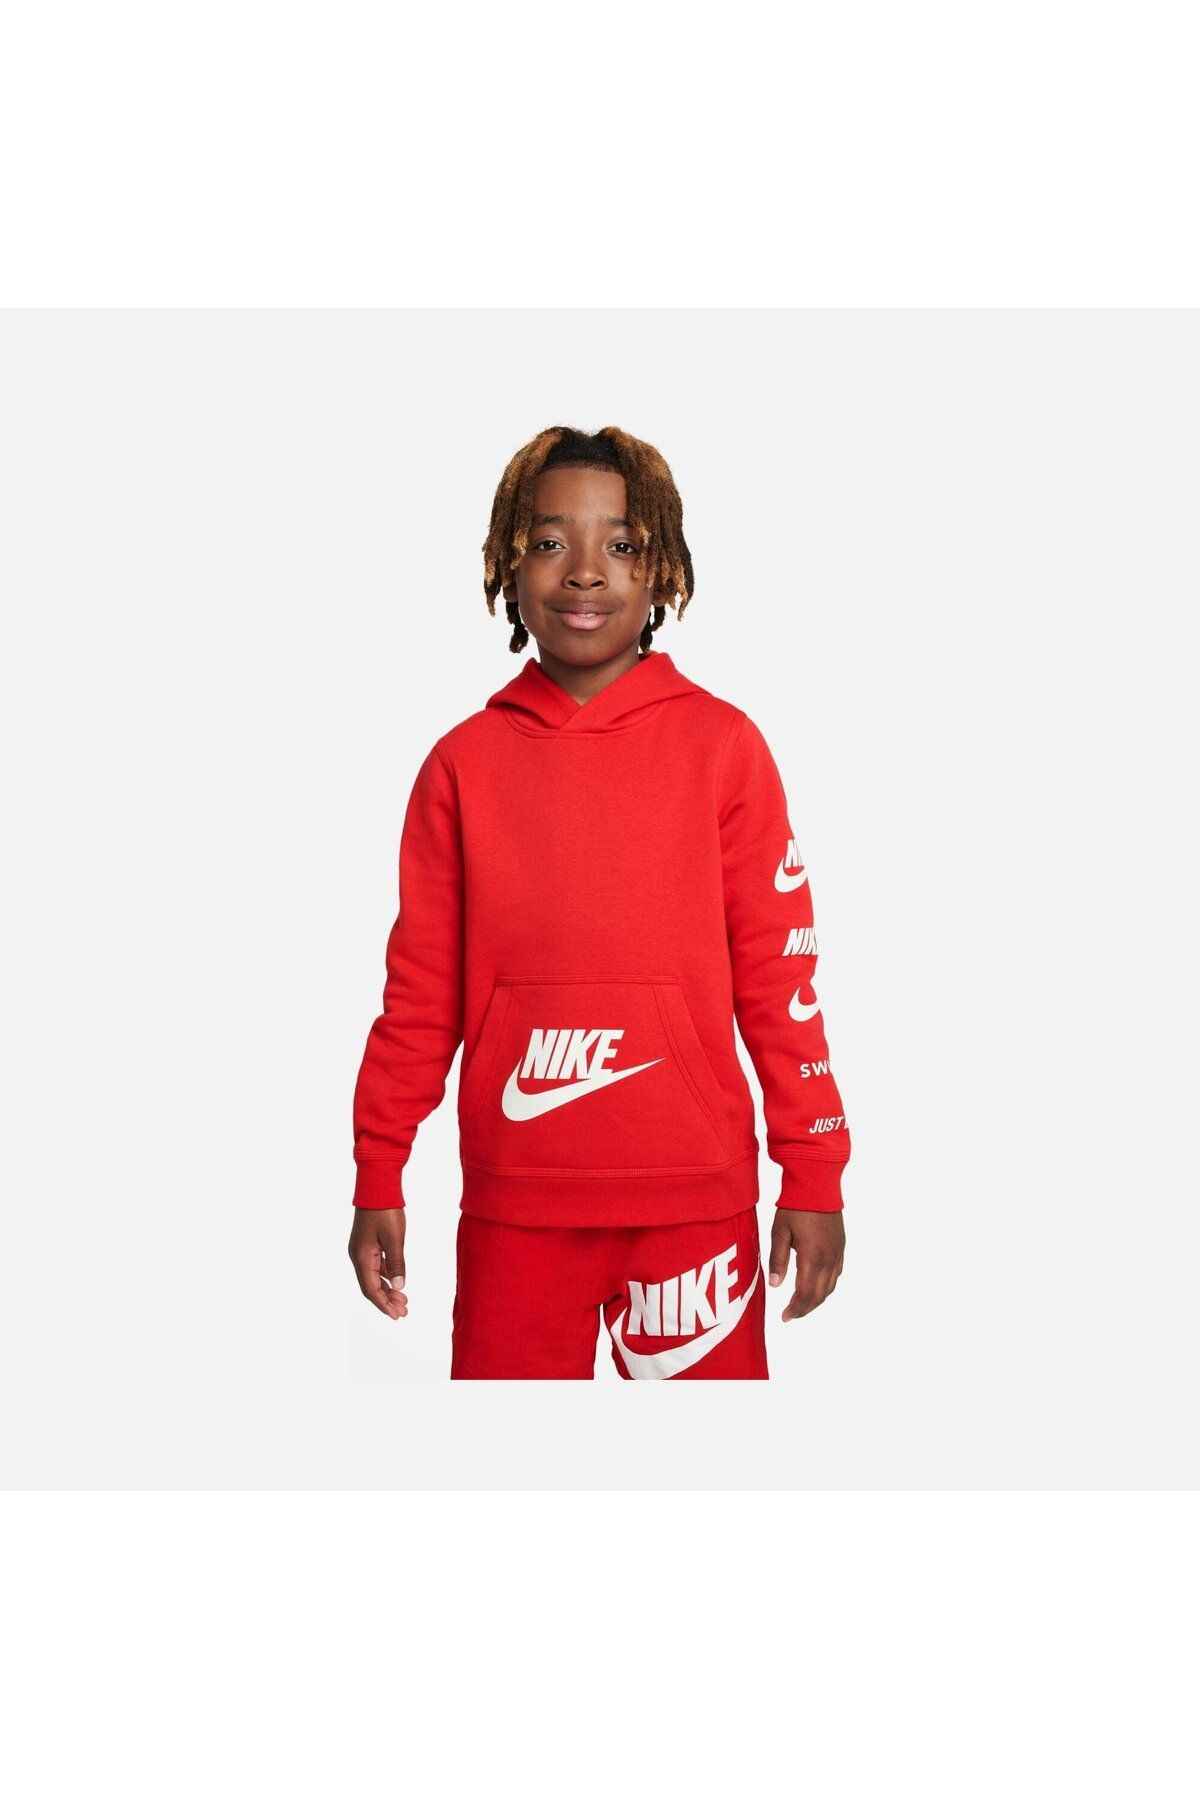 Nike Sportswear Standard Issue Pullover Hoodie (Boys') Çocuk Sweatshirt FN7724-657